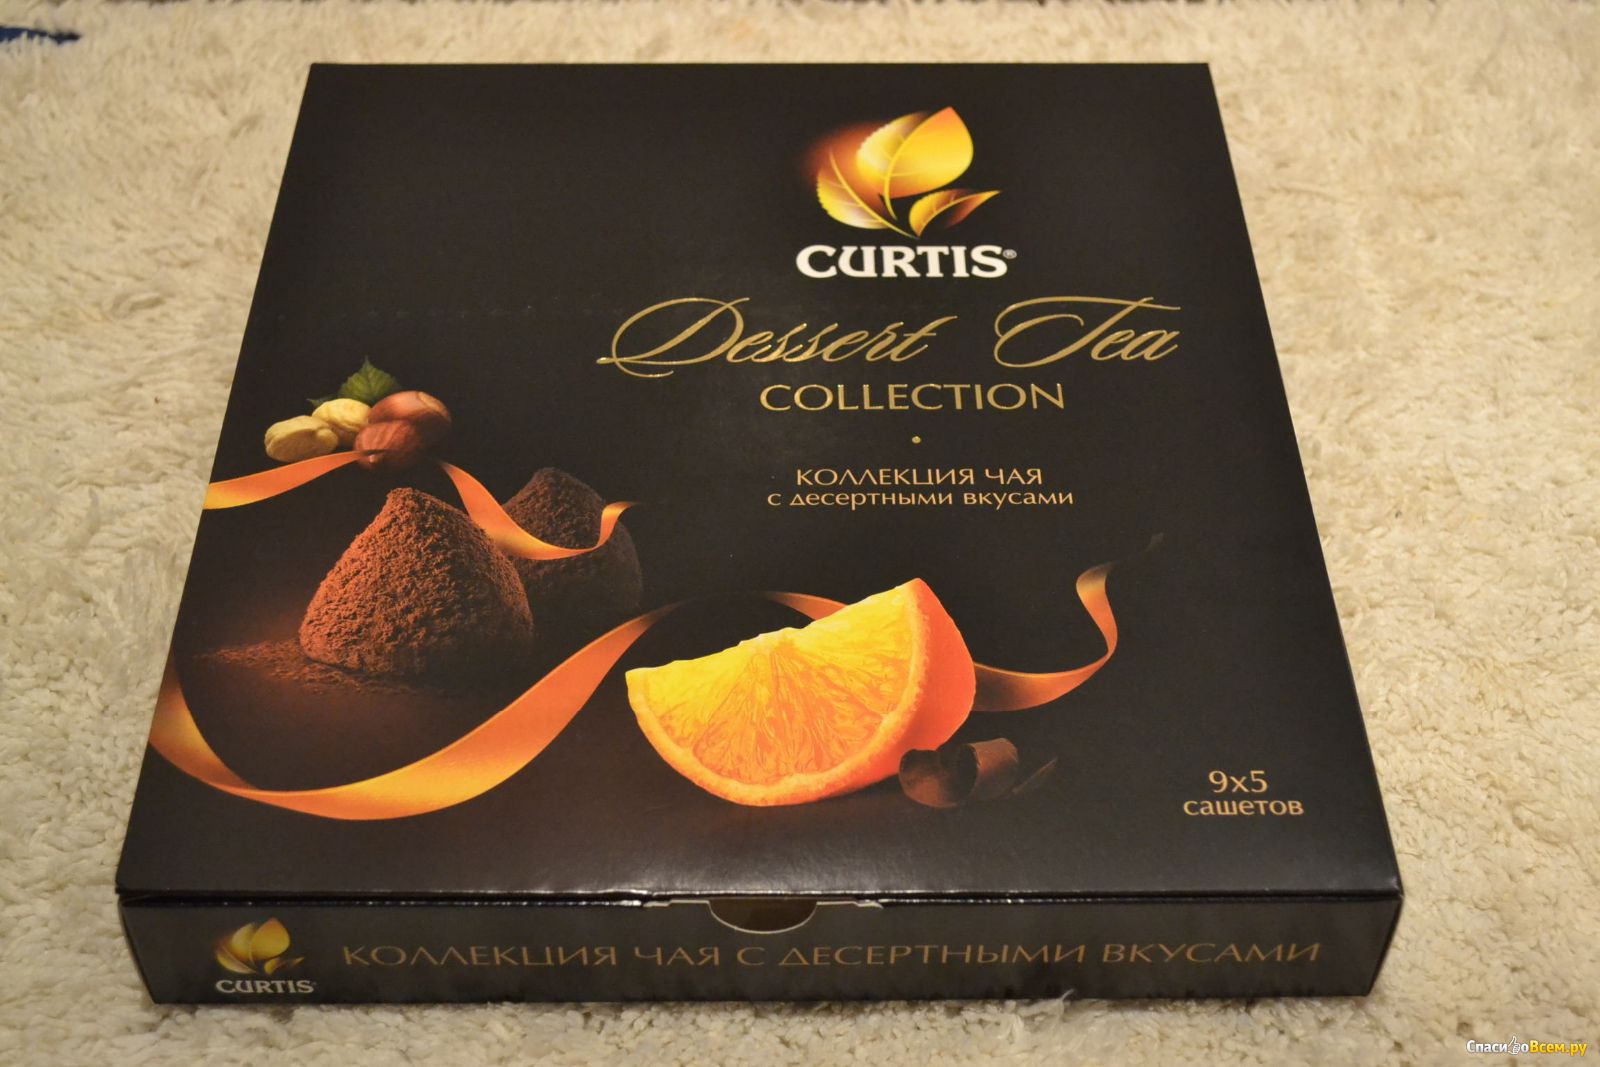 Curtis коллекция чая 6 десертных вкусов